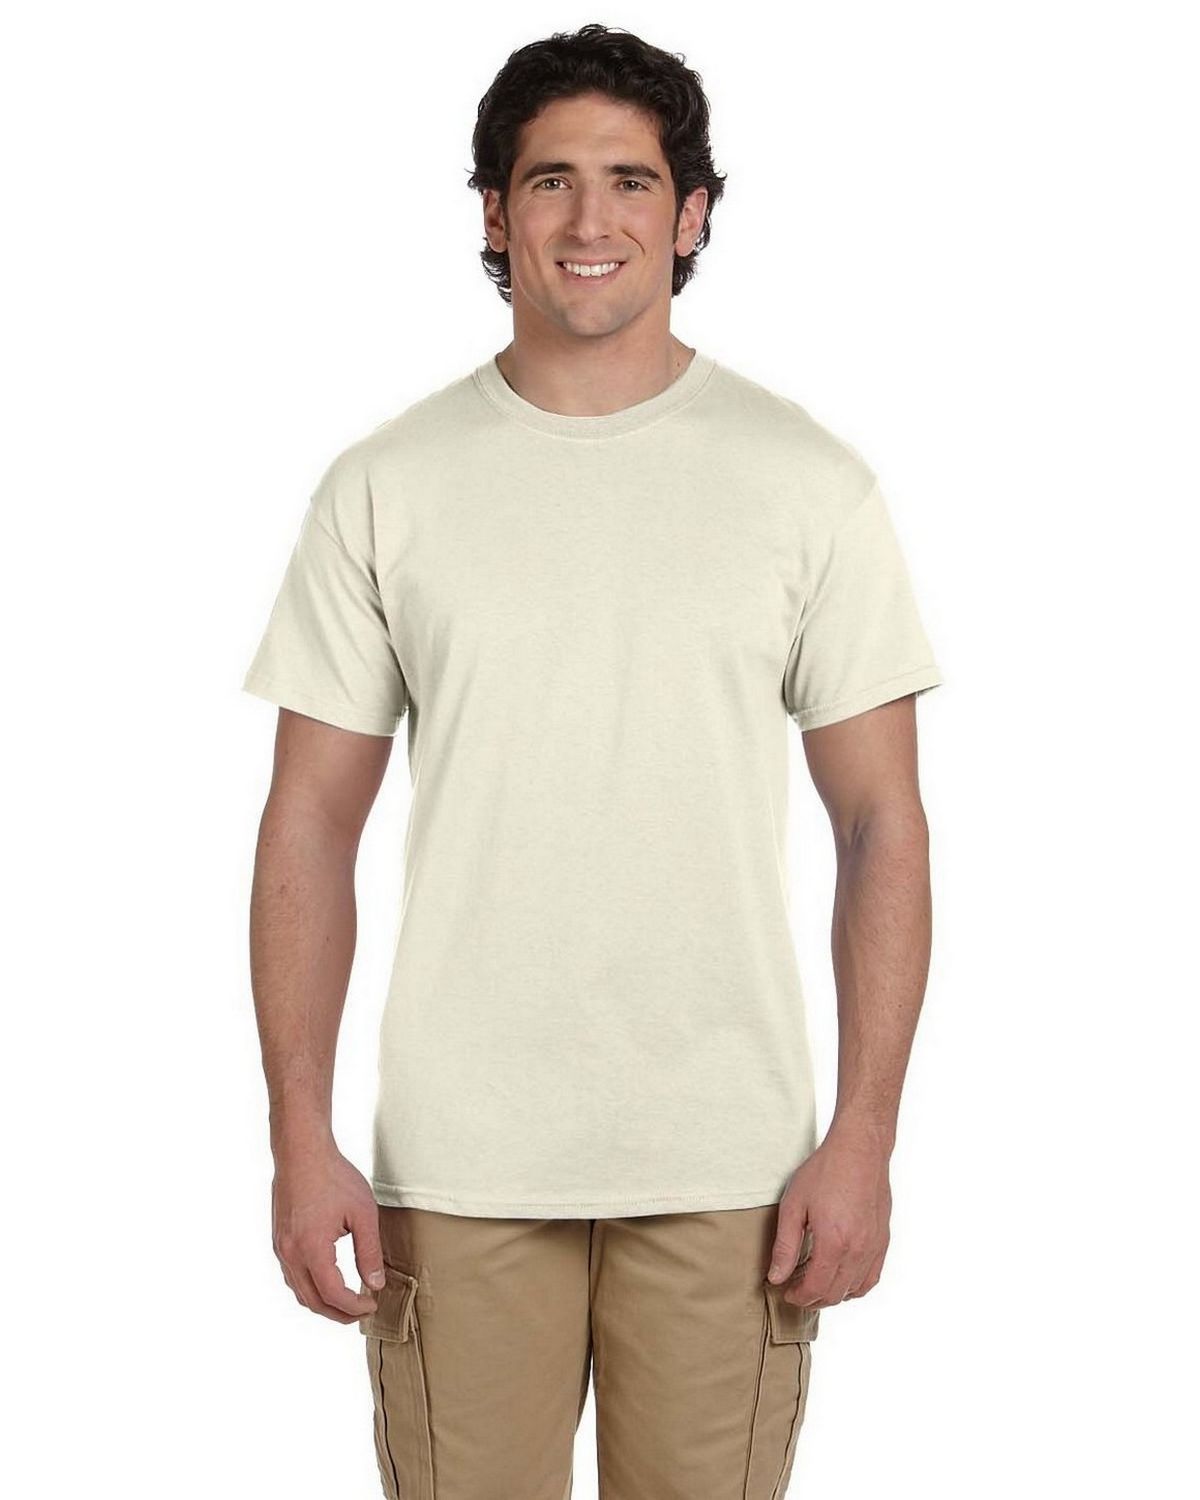 G200 Gildan Ultra Cotton T Shirt Size Chart